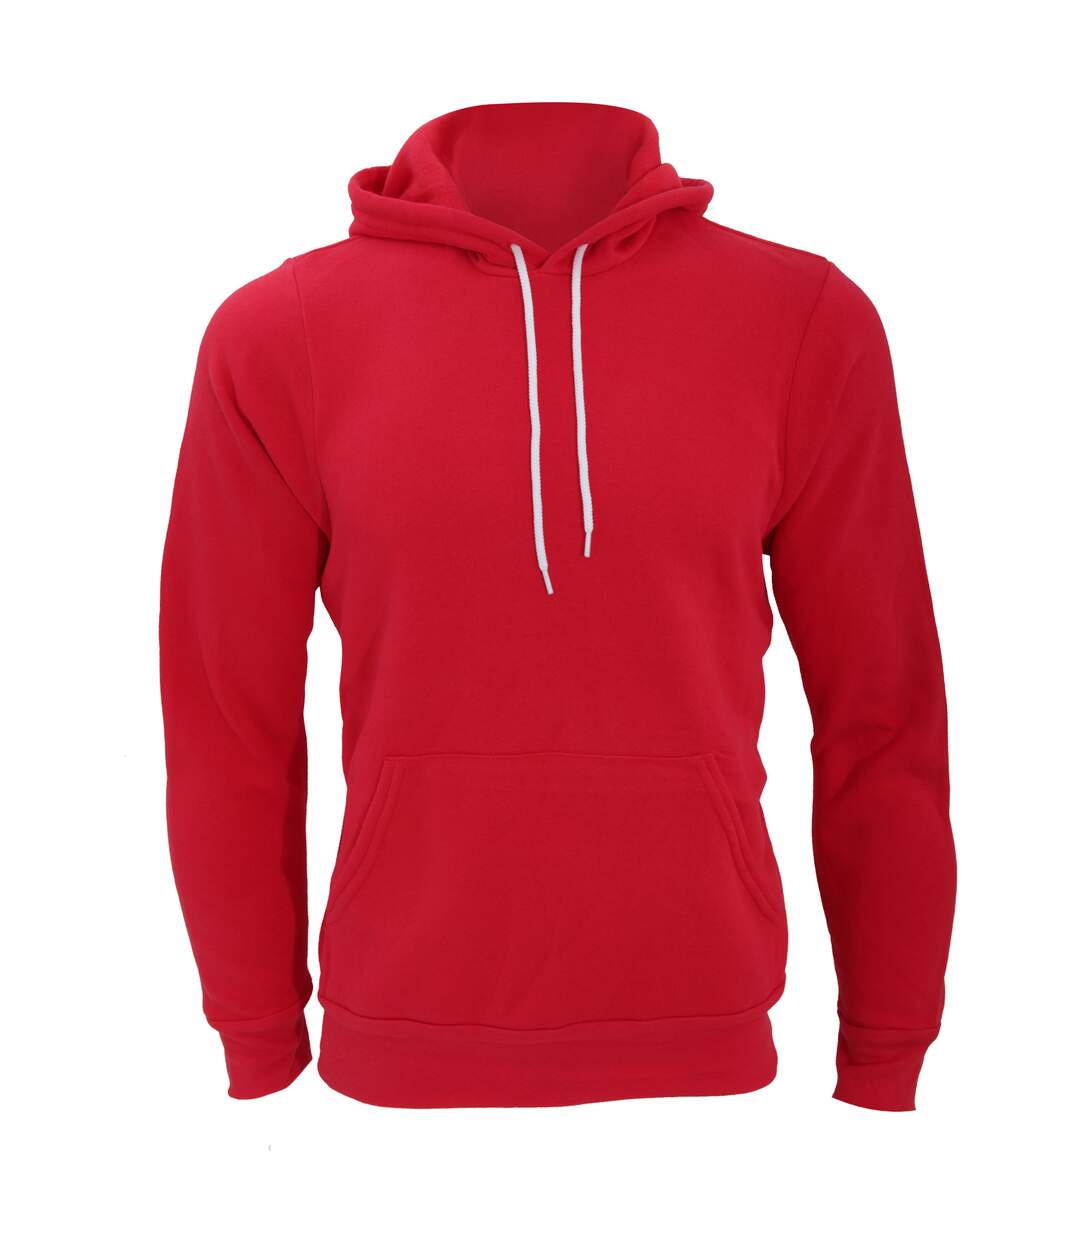 Canvas - Sweatshirt à capuche - Homme (Rouge) - UTBC2598